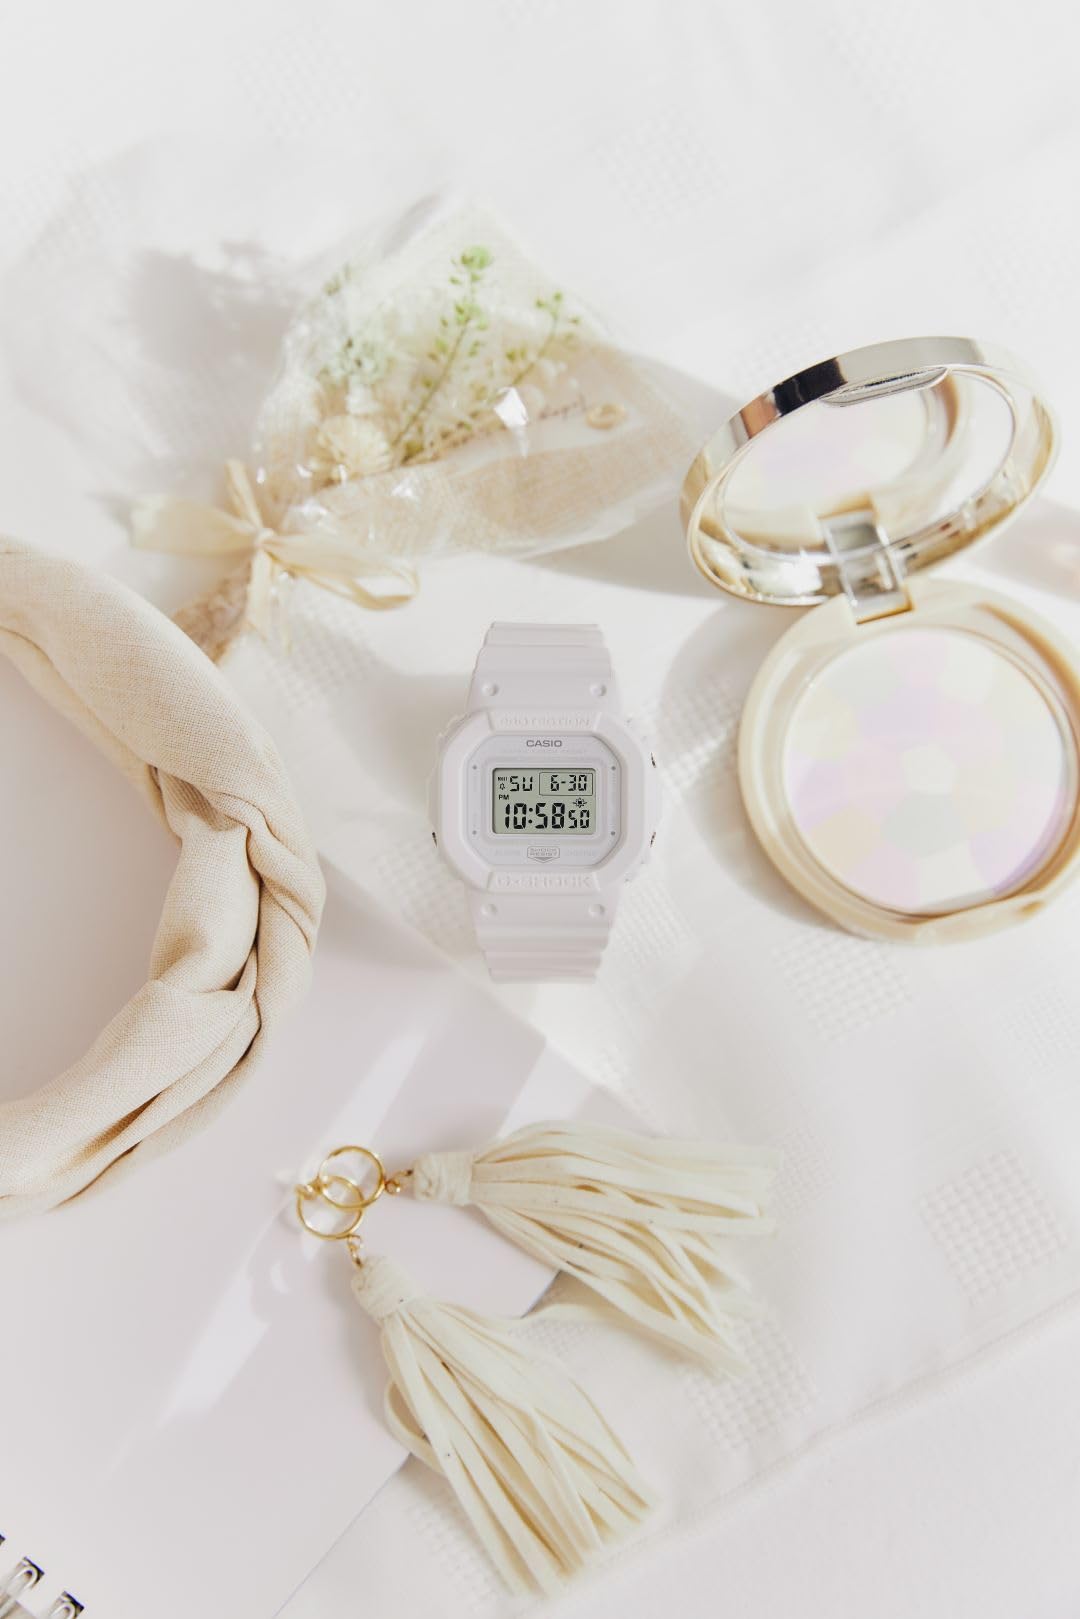 [カシオ] 腕時計 ジーショック 【国内正規品】 ミッドサイズモデル GMD-S5600BA-7JF レディース ホワイト - BanzaiHobby